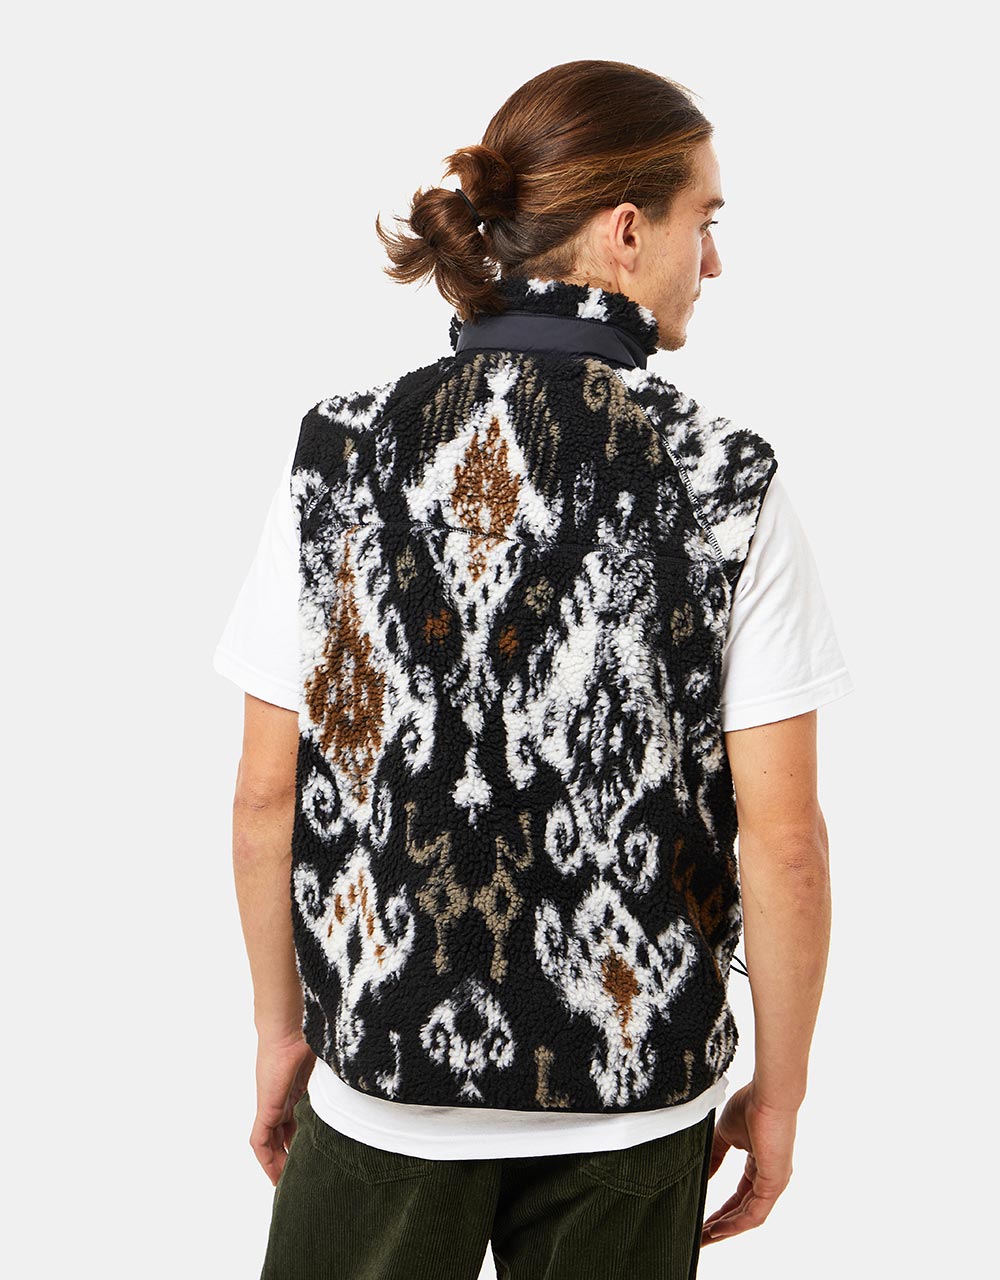 Carhartt WIP Prentis Vest Liner - Baru Jacquard/Black/Black